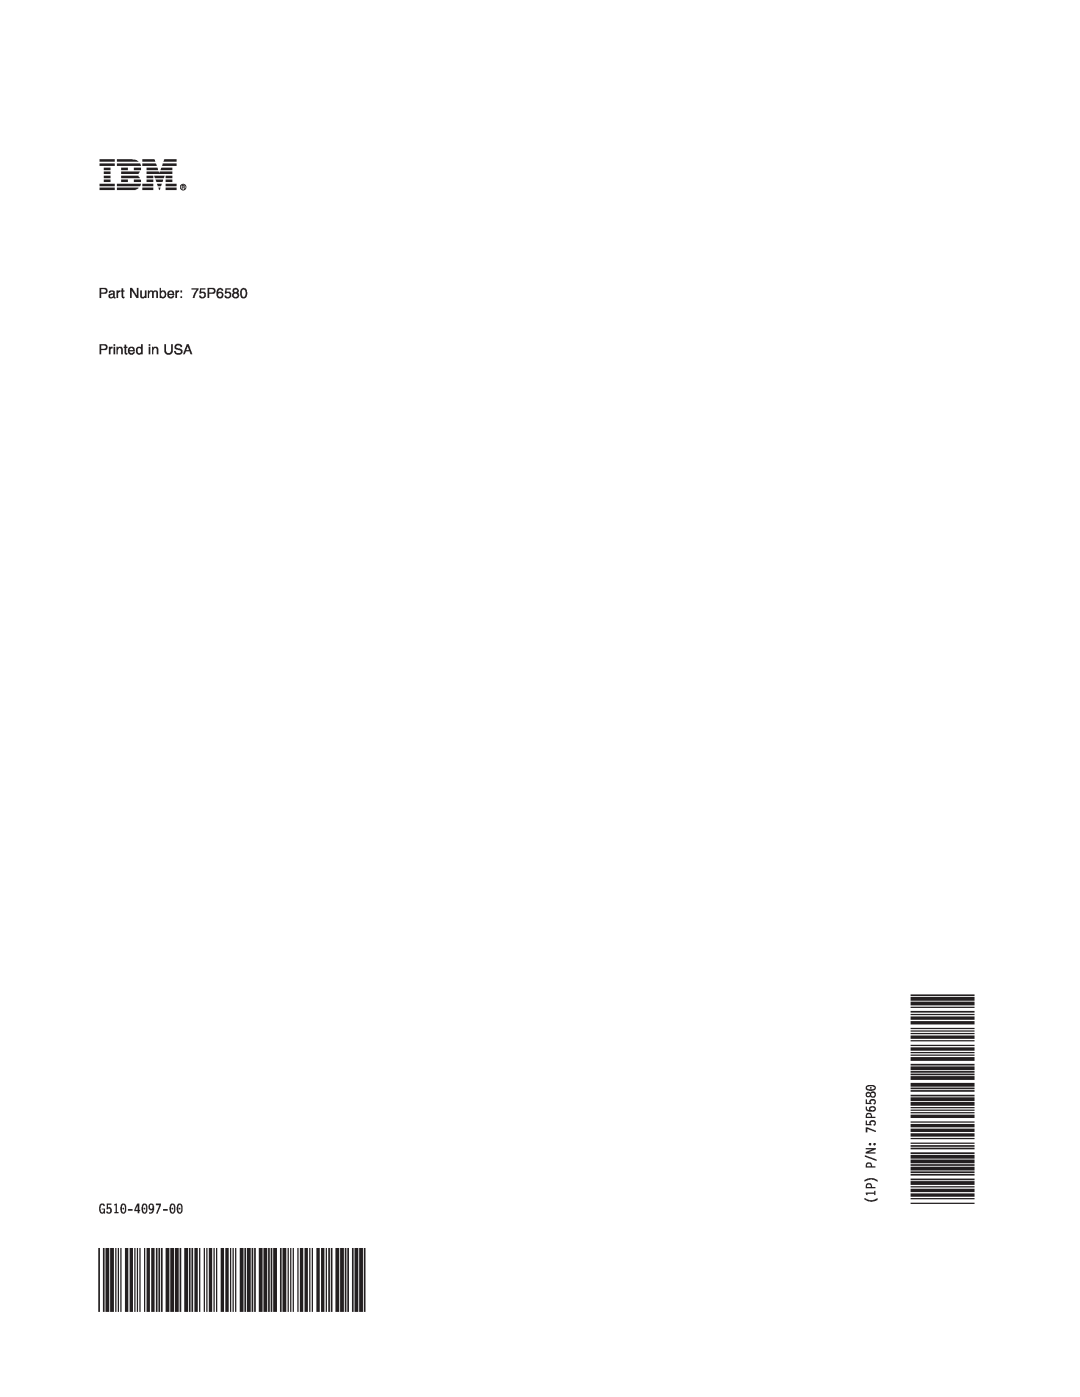 IBM 1464, 1454 manual G510-4097-00, 1P P/N 75P6580 